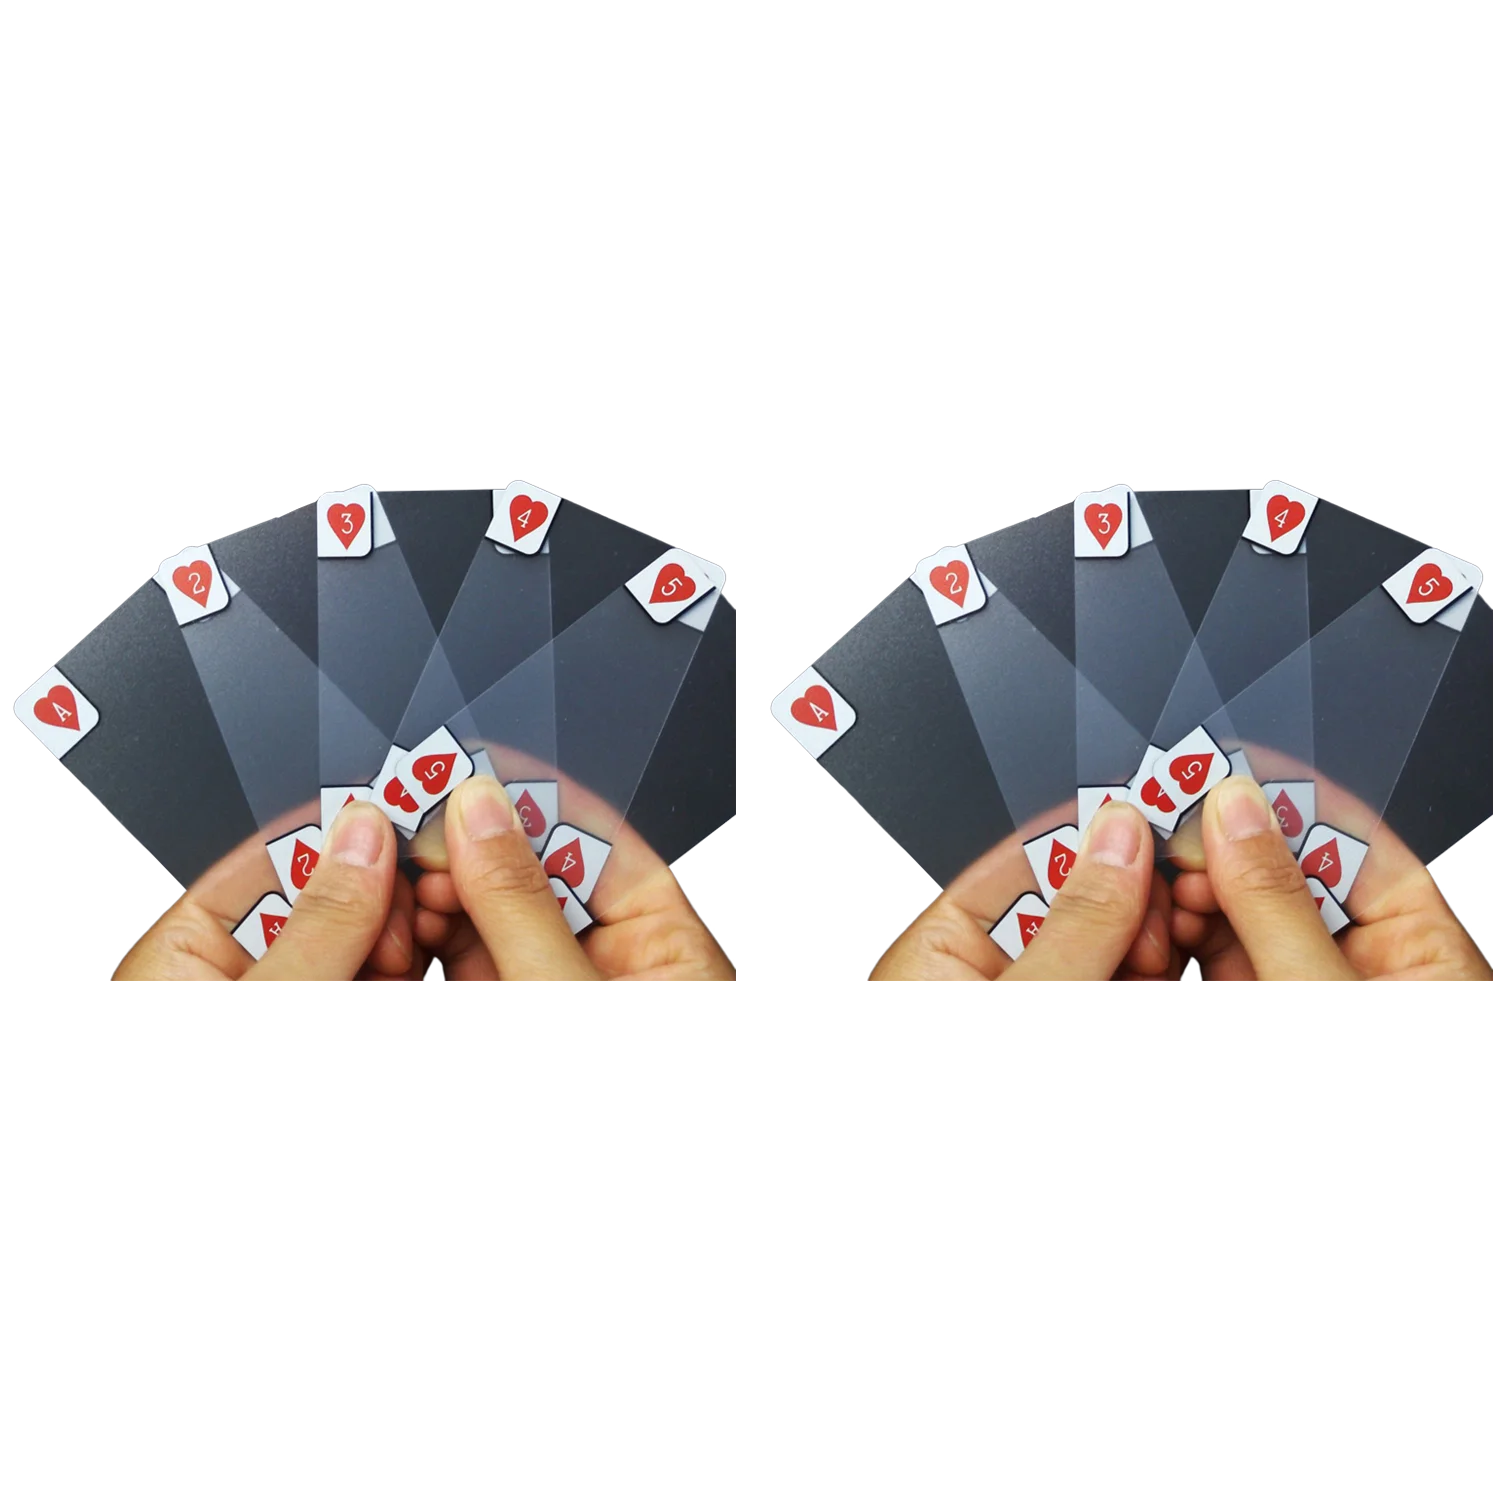 

2X Необычные прозрачные пластиковые фотообои новые покерные индексные игральные карты